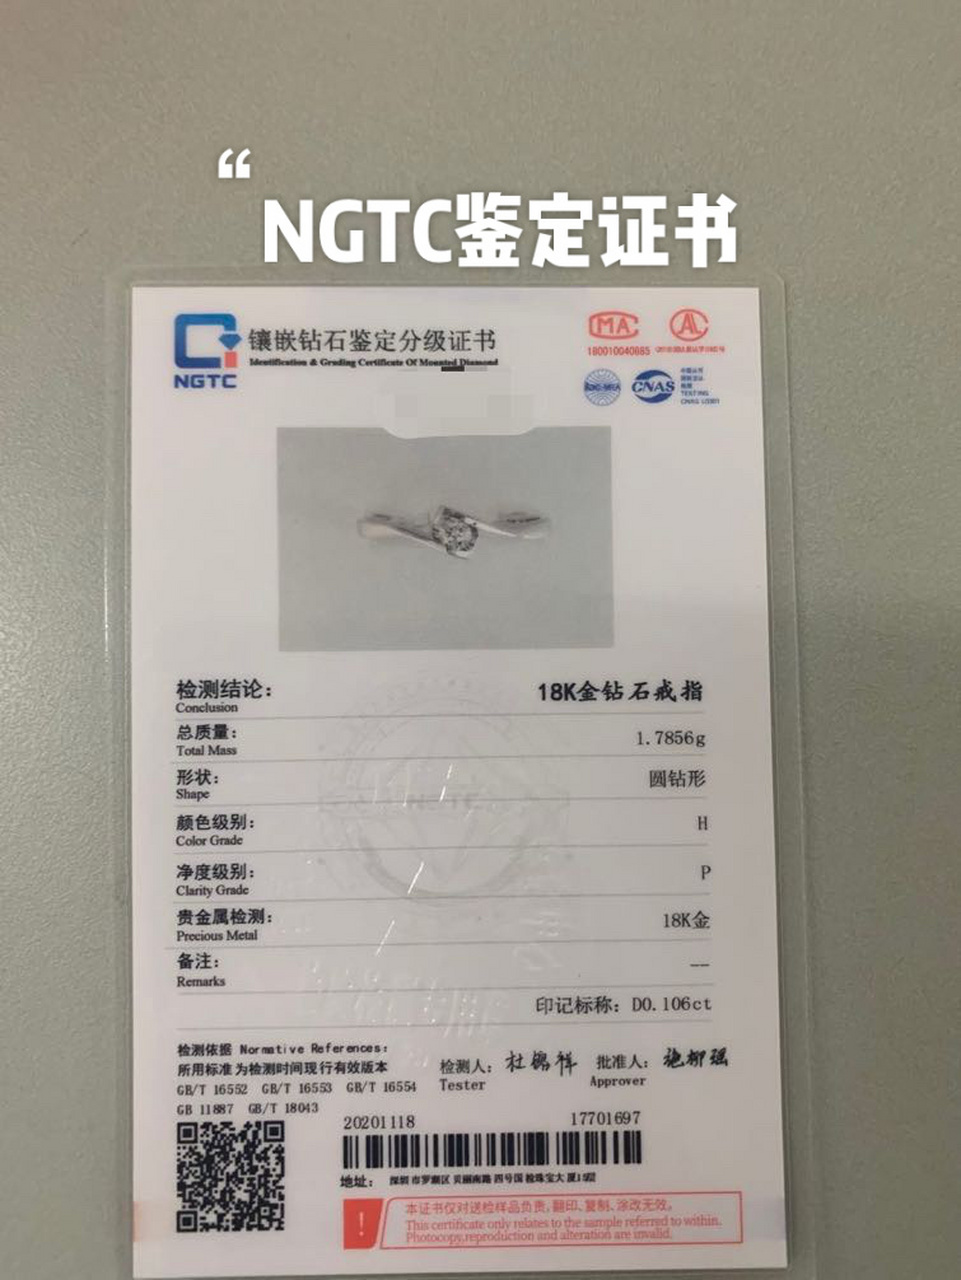 北京国检证书(NGTC)图片